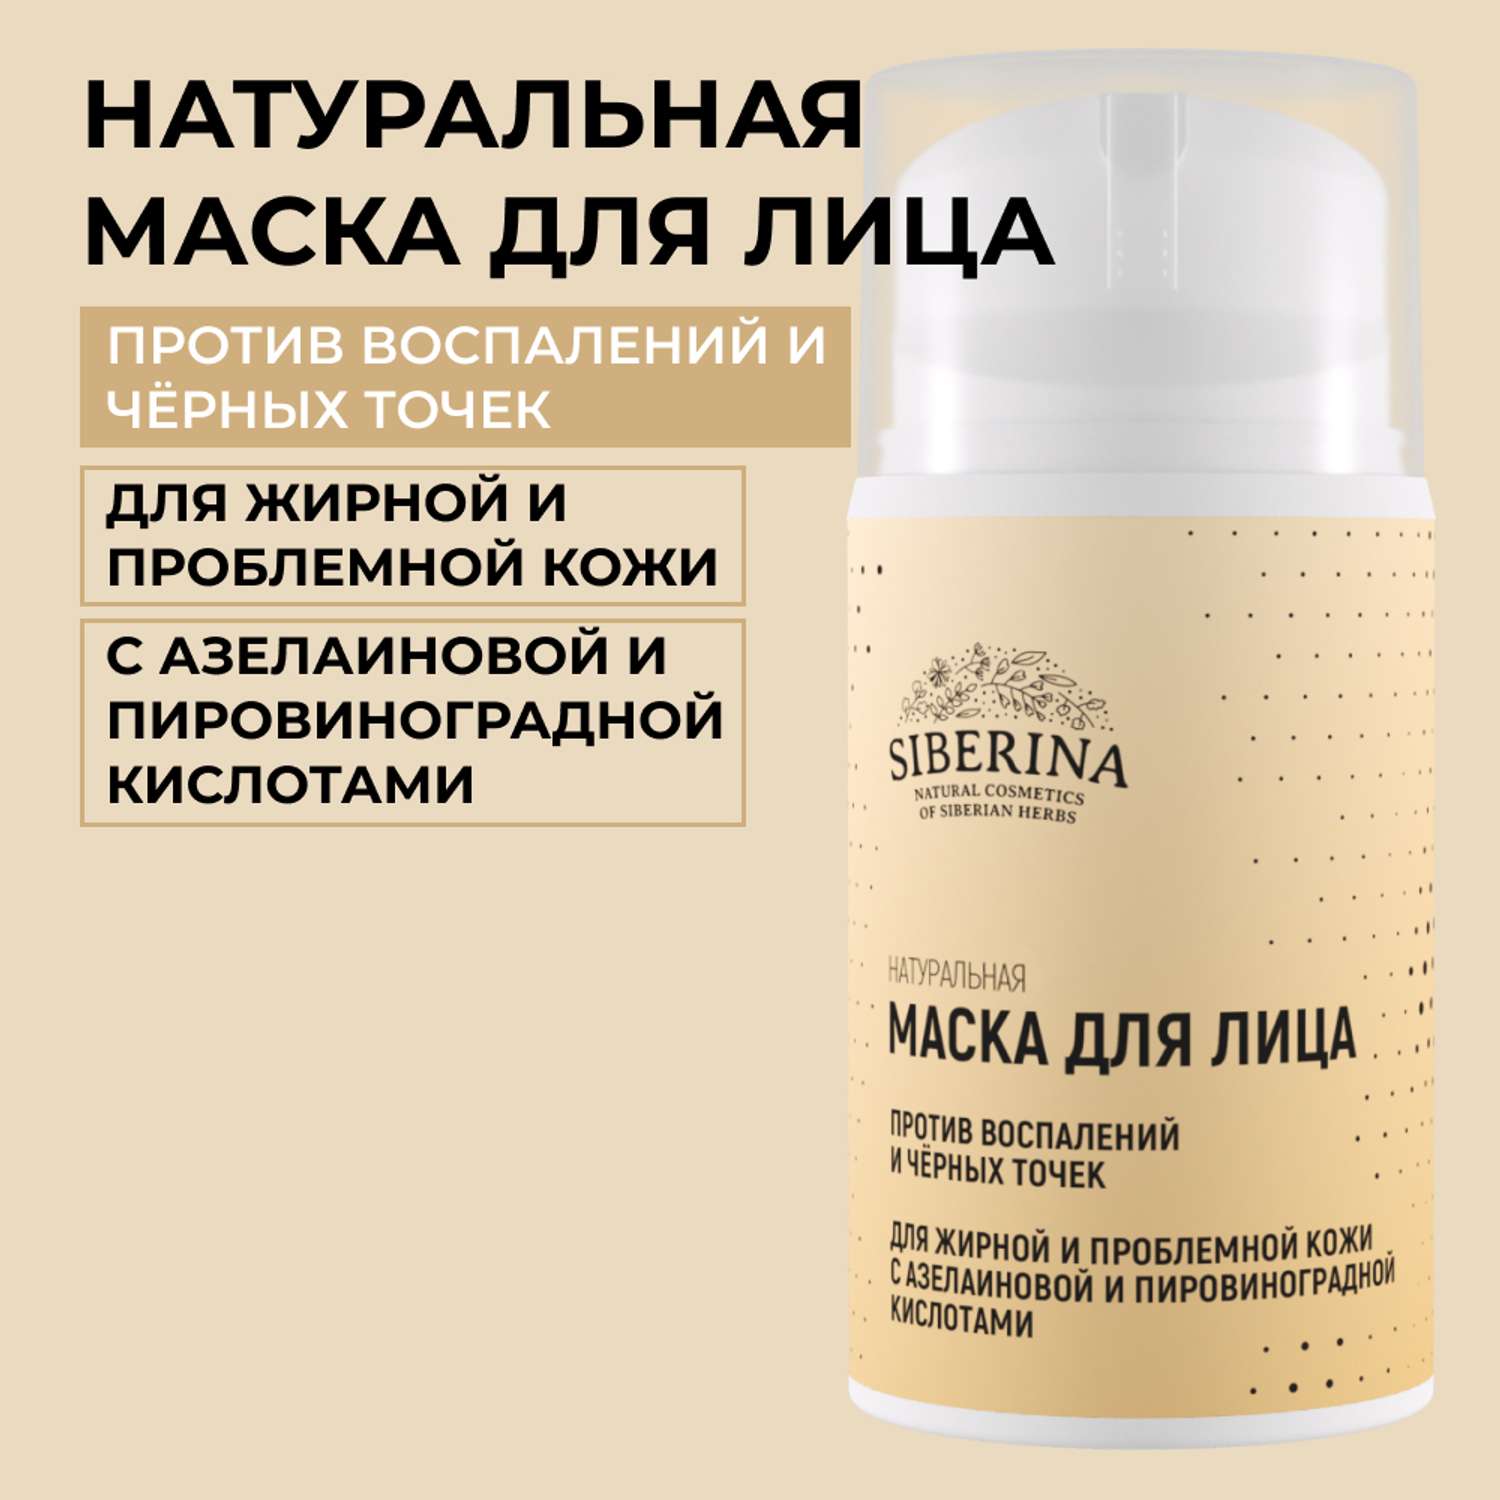 Маска для лица Siberina натуральная «Против воспалений и черных точек» для жирной и проблемной кожи 50 мл - фото 1